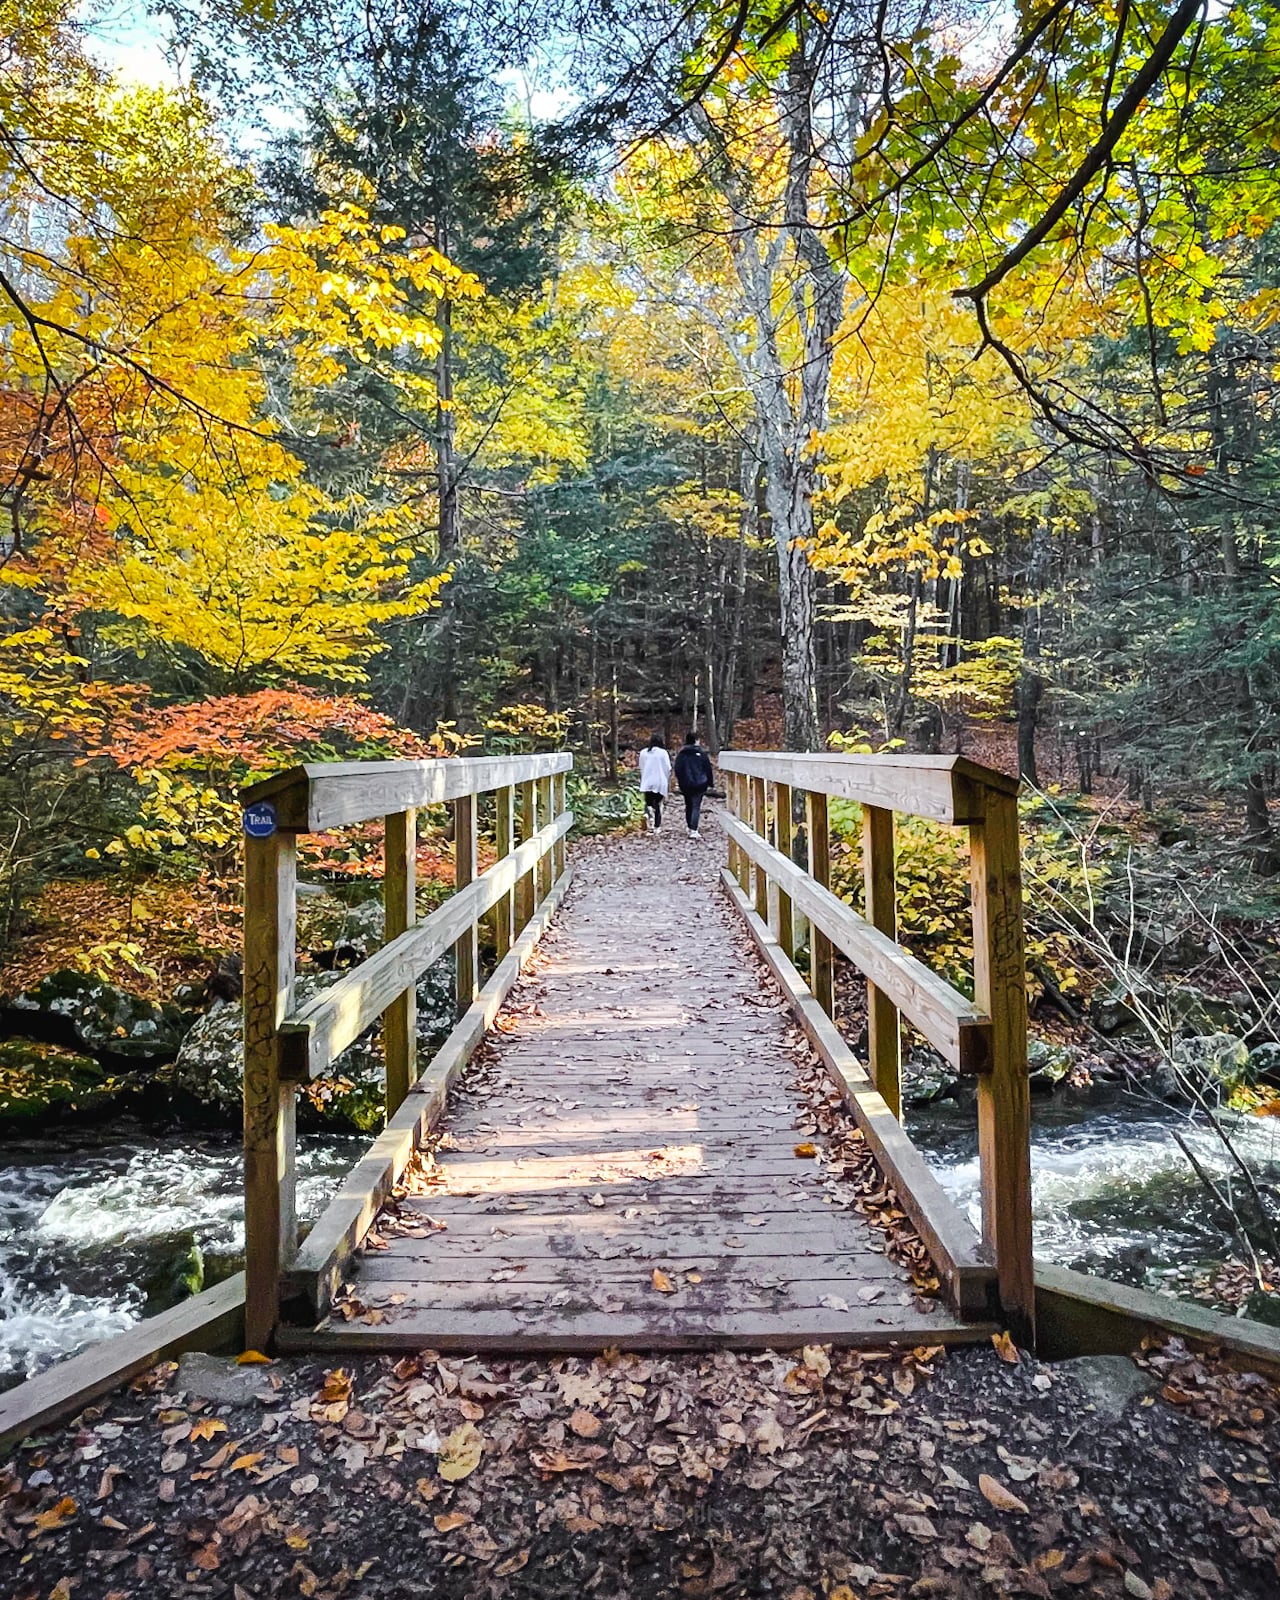 Kaaterskill Falls hike in the Catskills